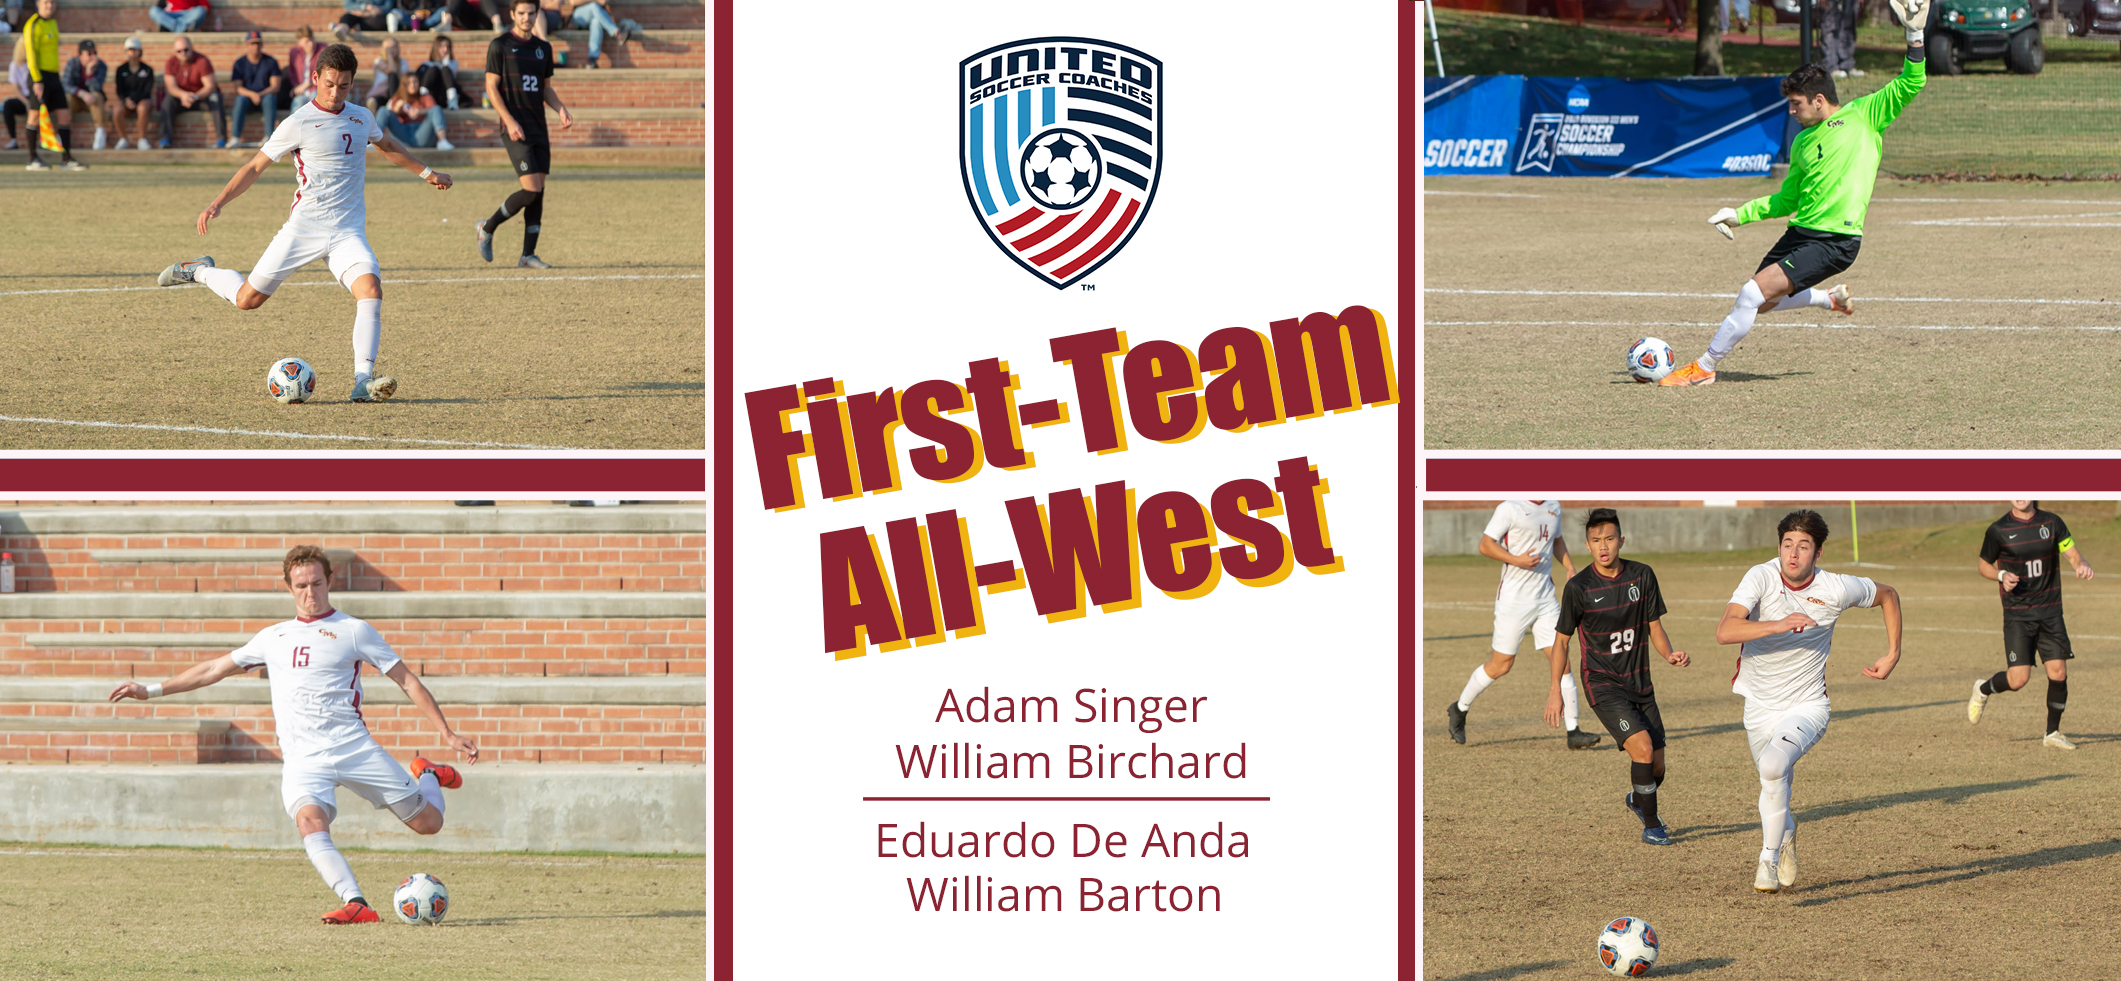 Singer, Birchard, De Anda, Barton Named First-Team All-West for CMS Men's Soccer